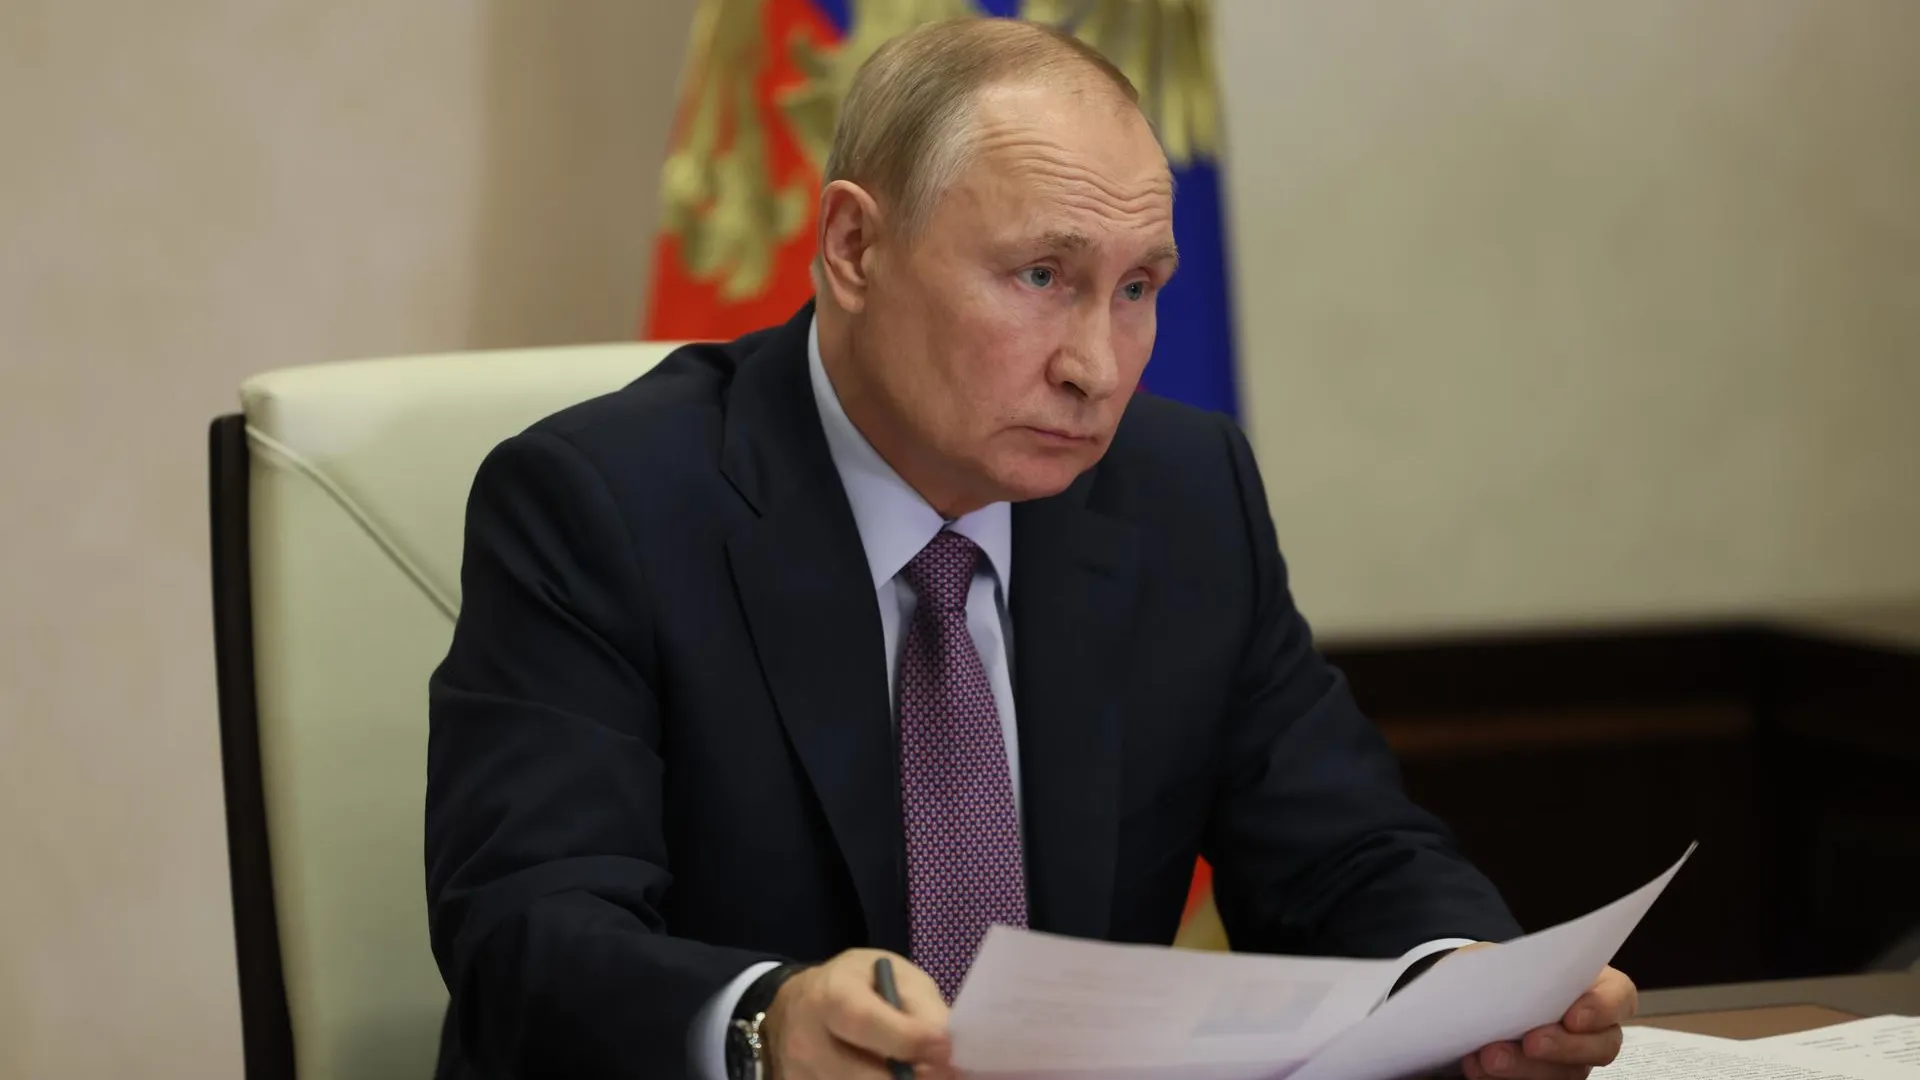 Частичная мобилизация выявила определенные проблемы в стране — Путин